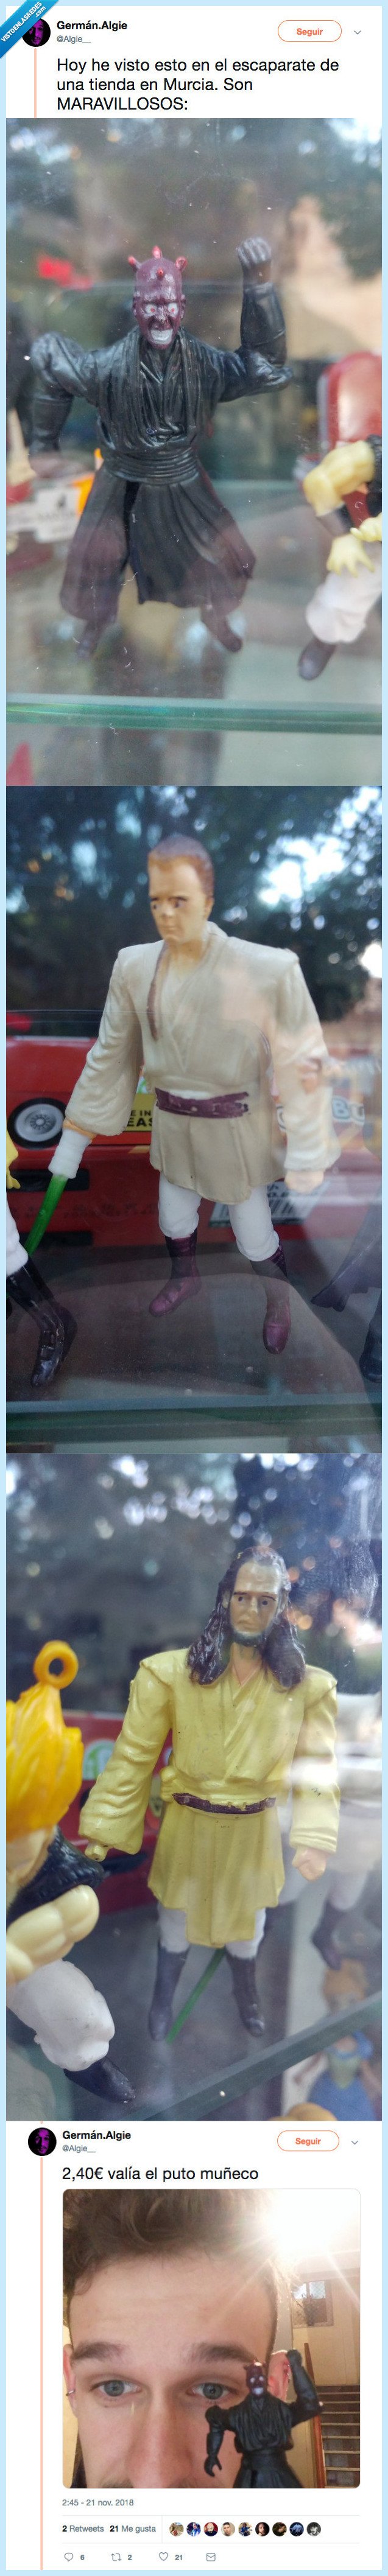 502745 - Compra estos muñecos de Star Wars en Murcia que se parecen muy poco a los reales pero nos hemos reído mucho con las caras, por @Algie__